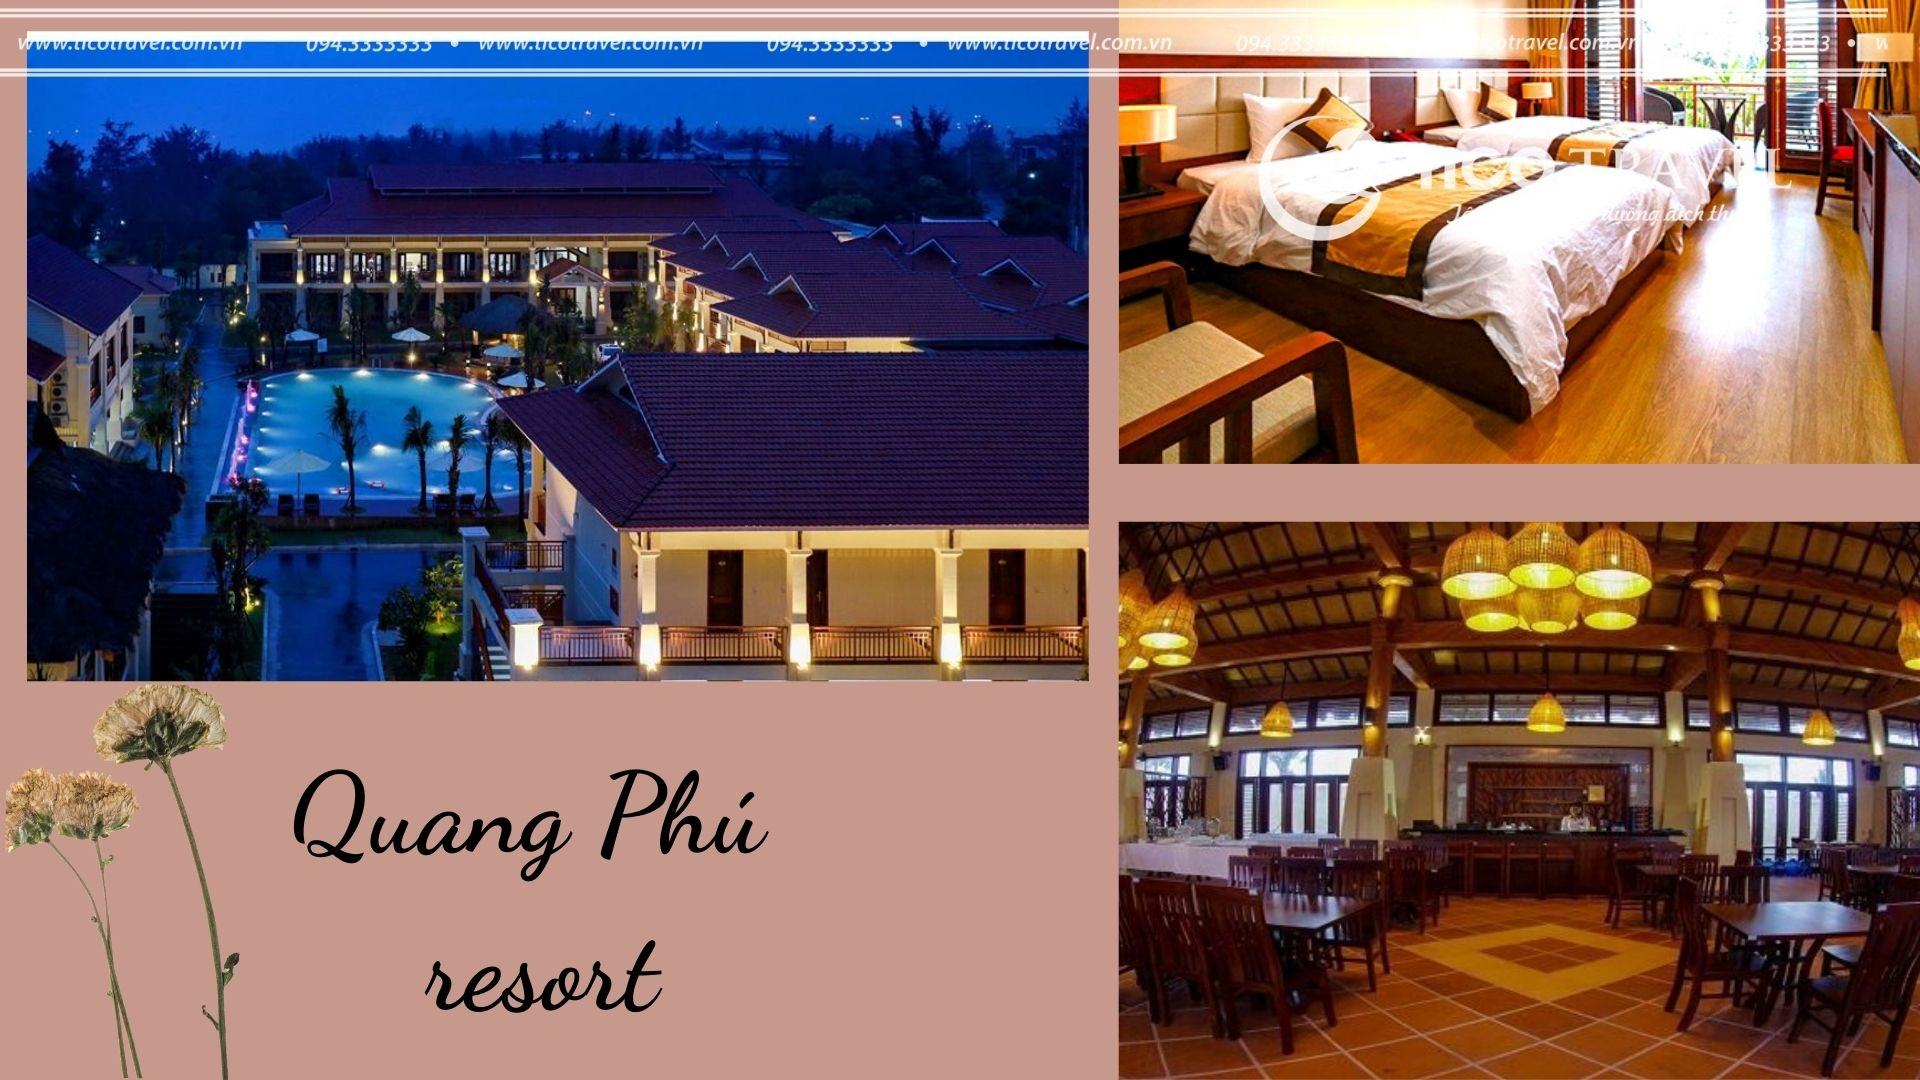 ảnh chụp Quang Phú resort Quảng Bình